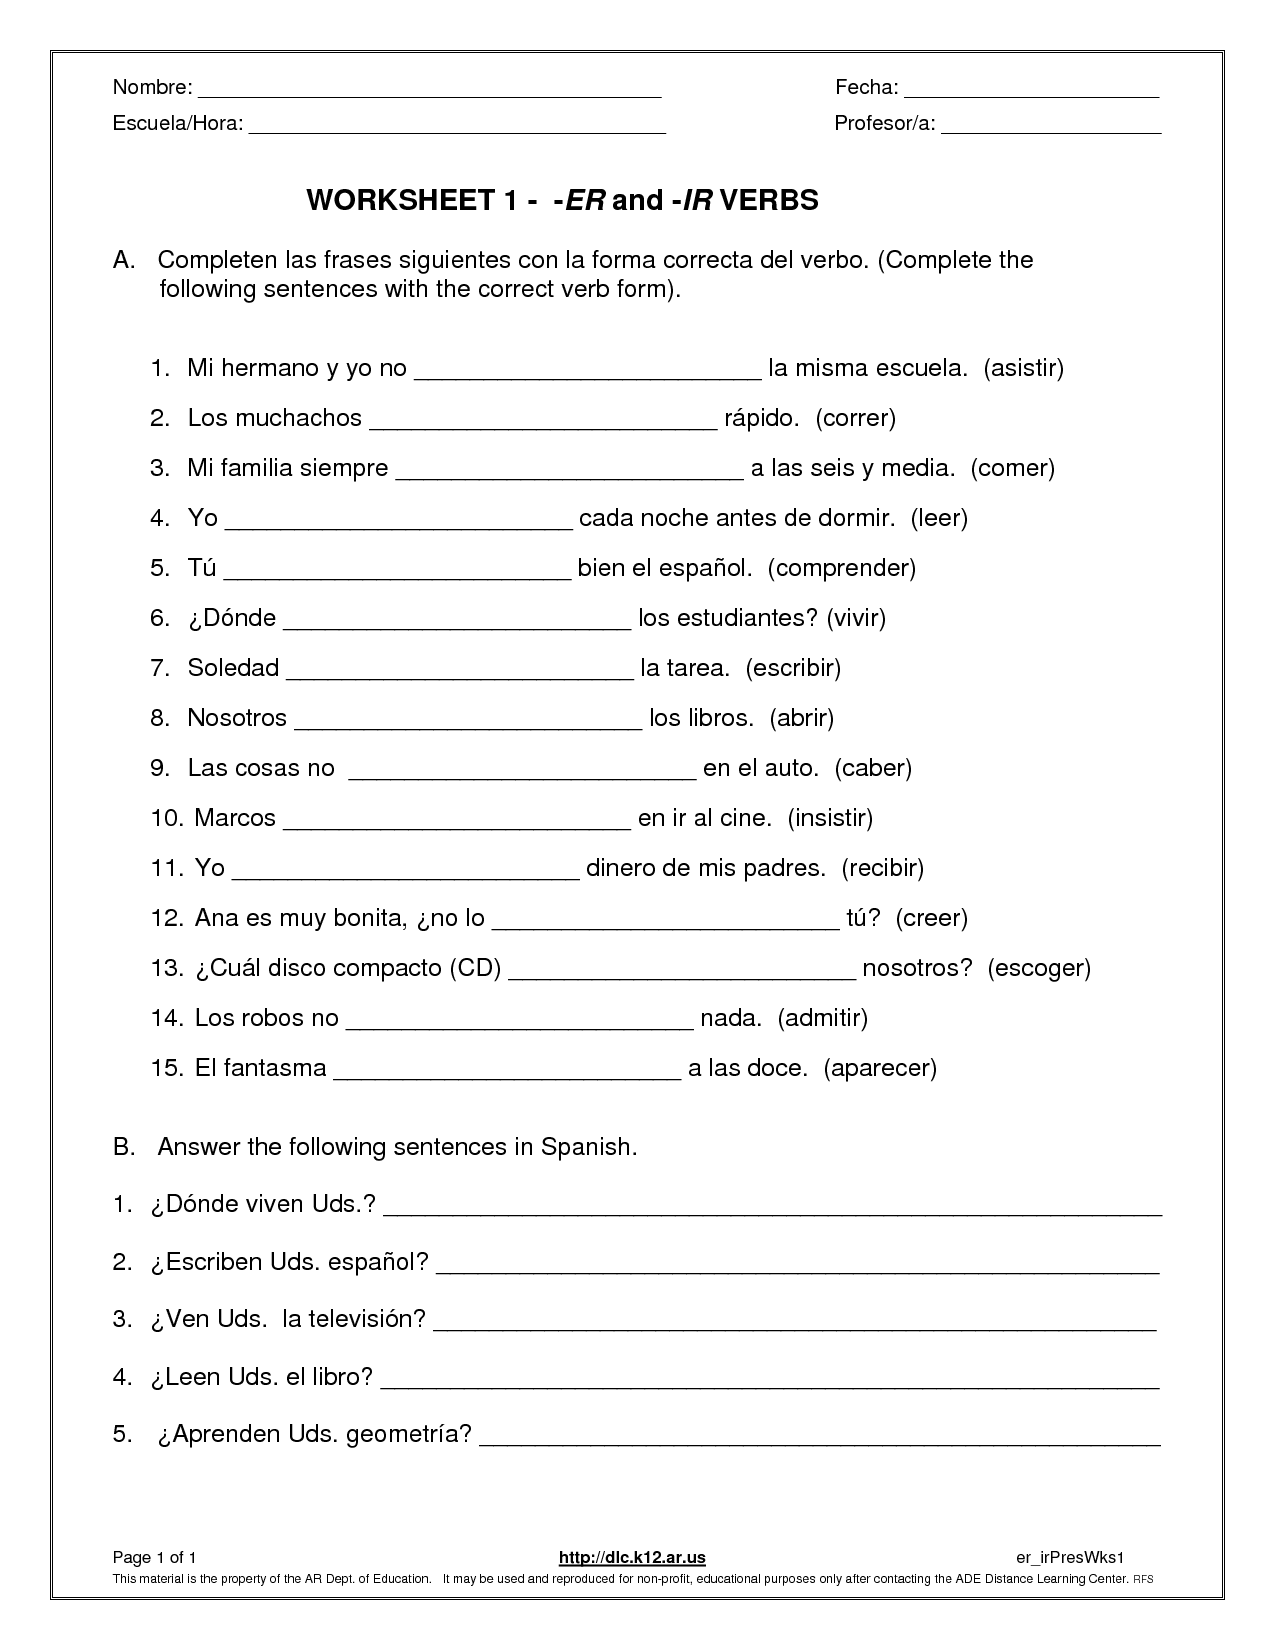 verbs-in-spanish-worksheet